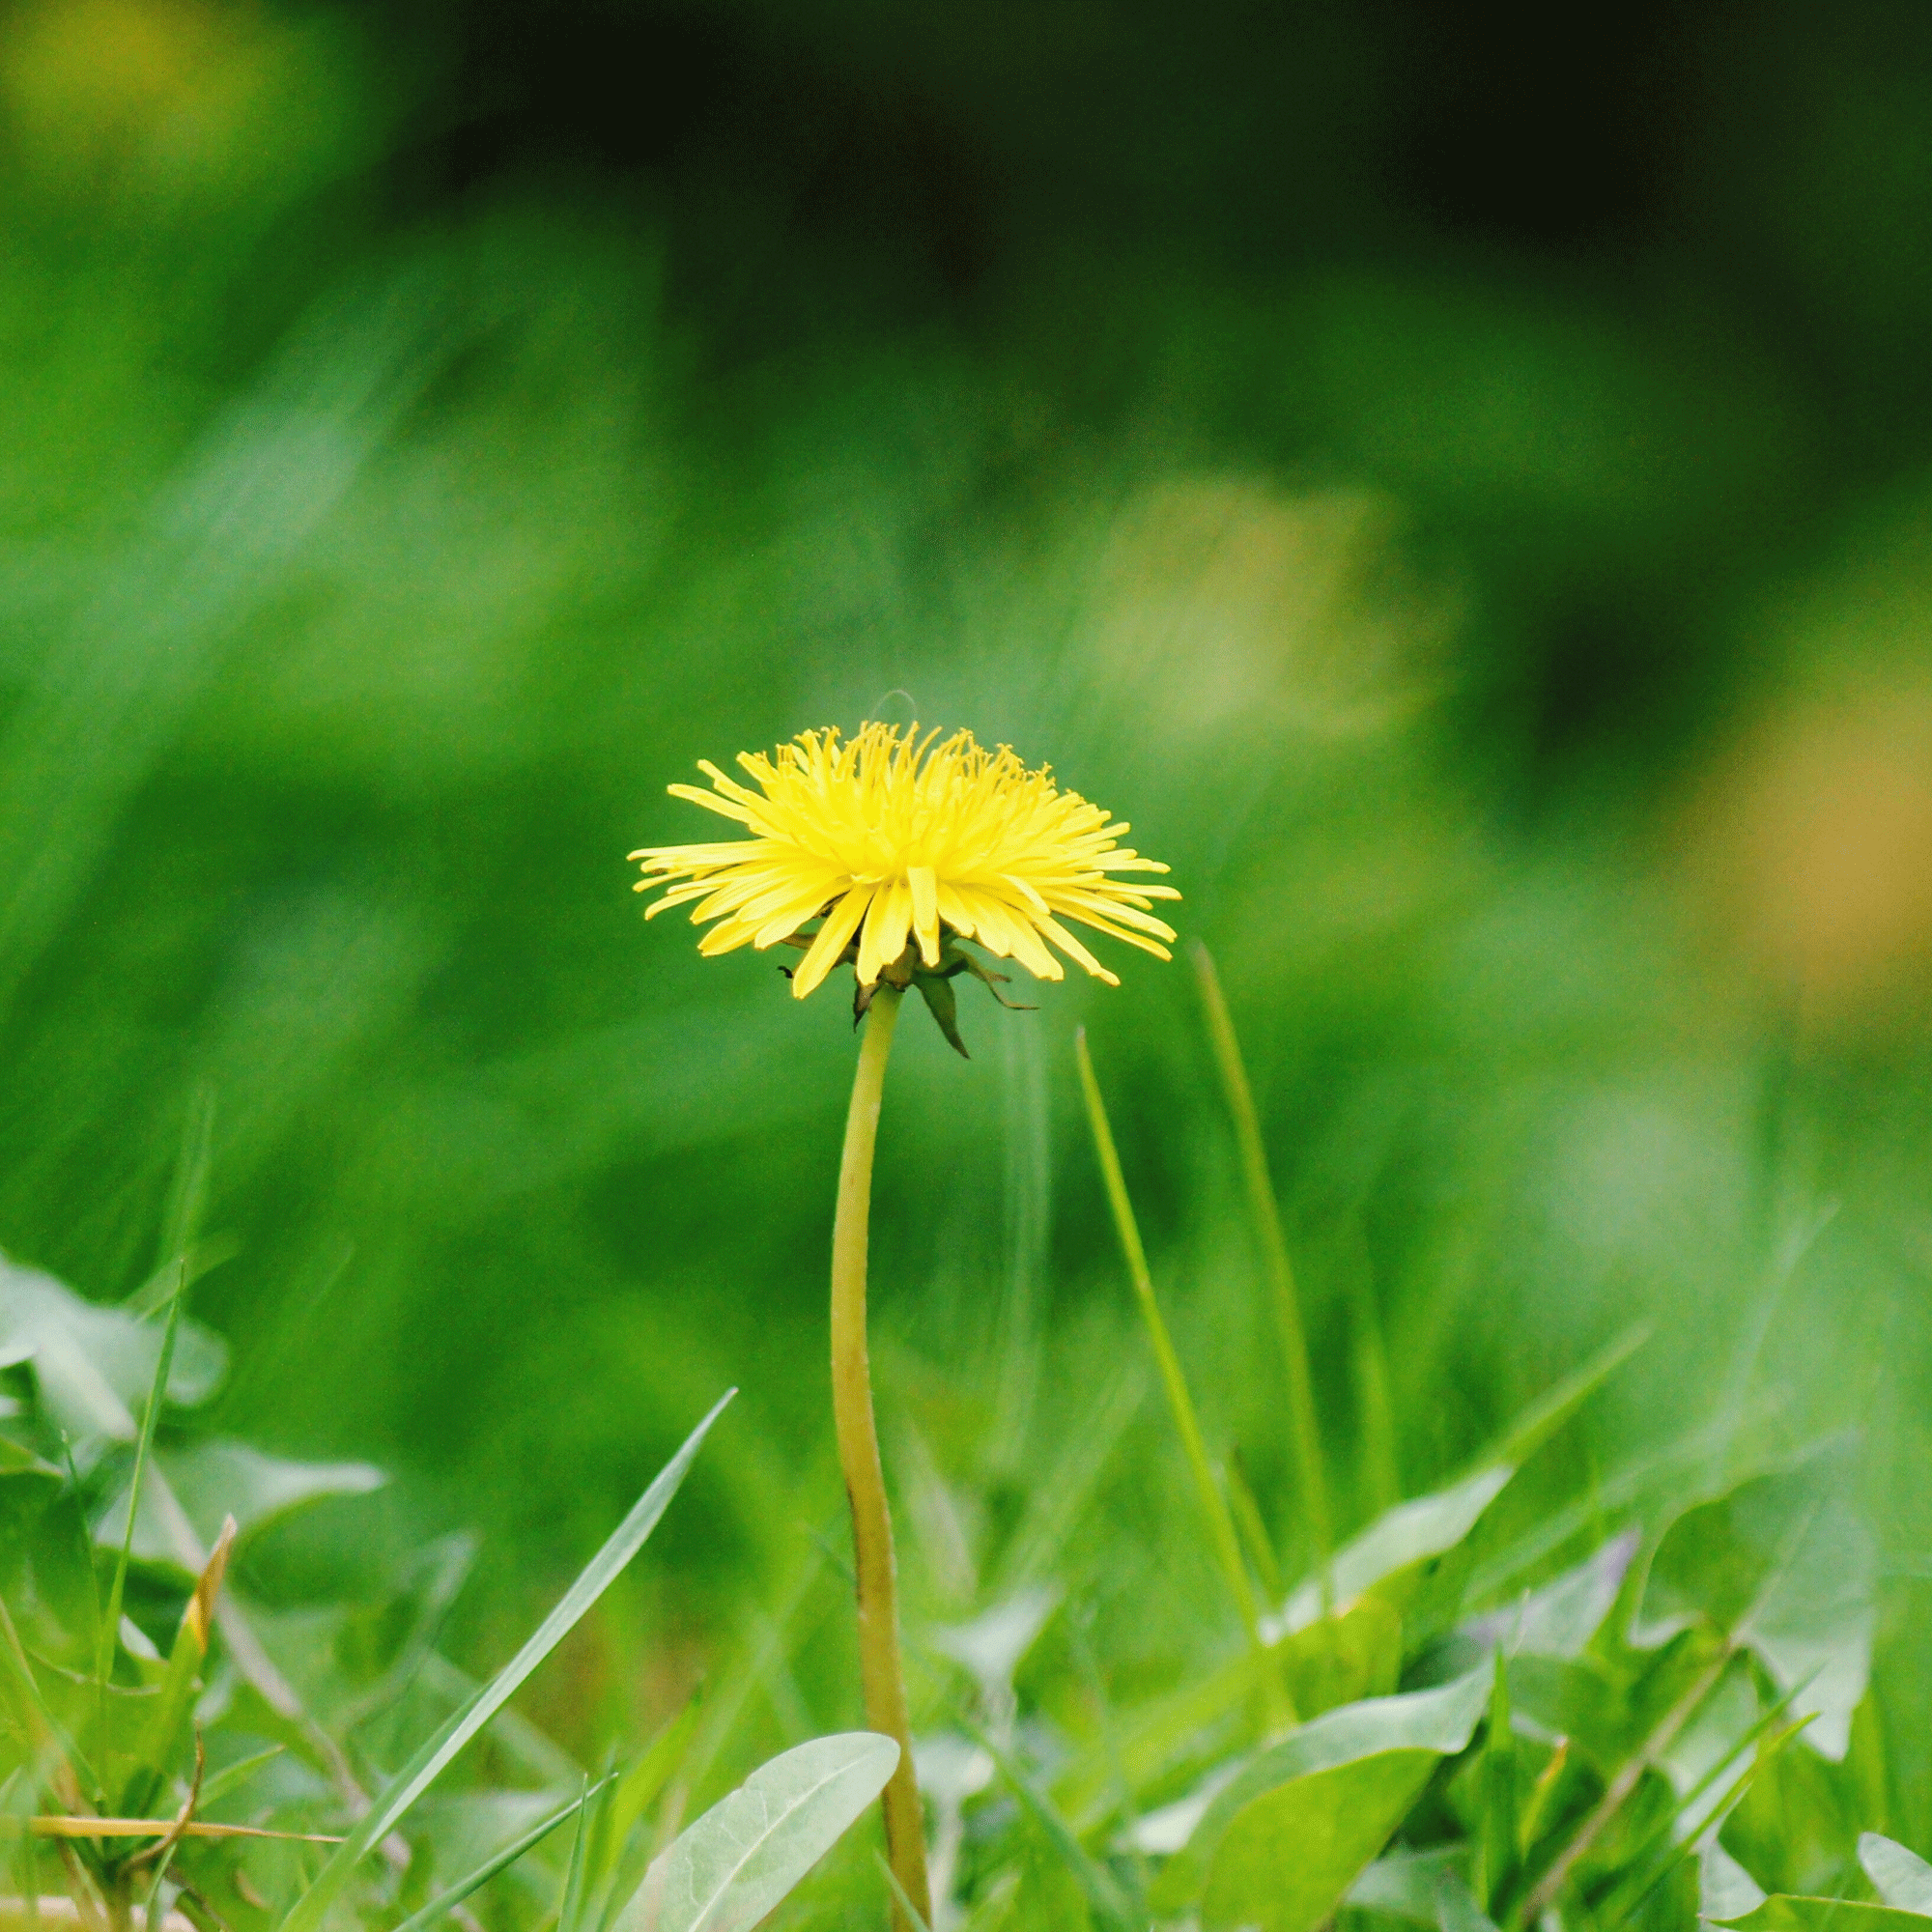 dandelion flower in a lawn